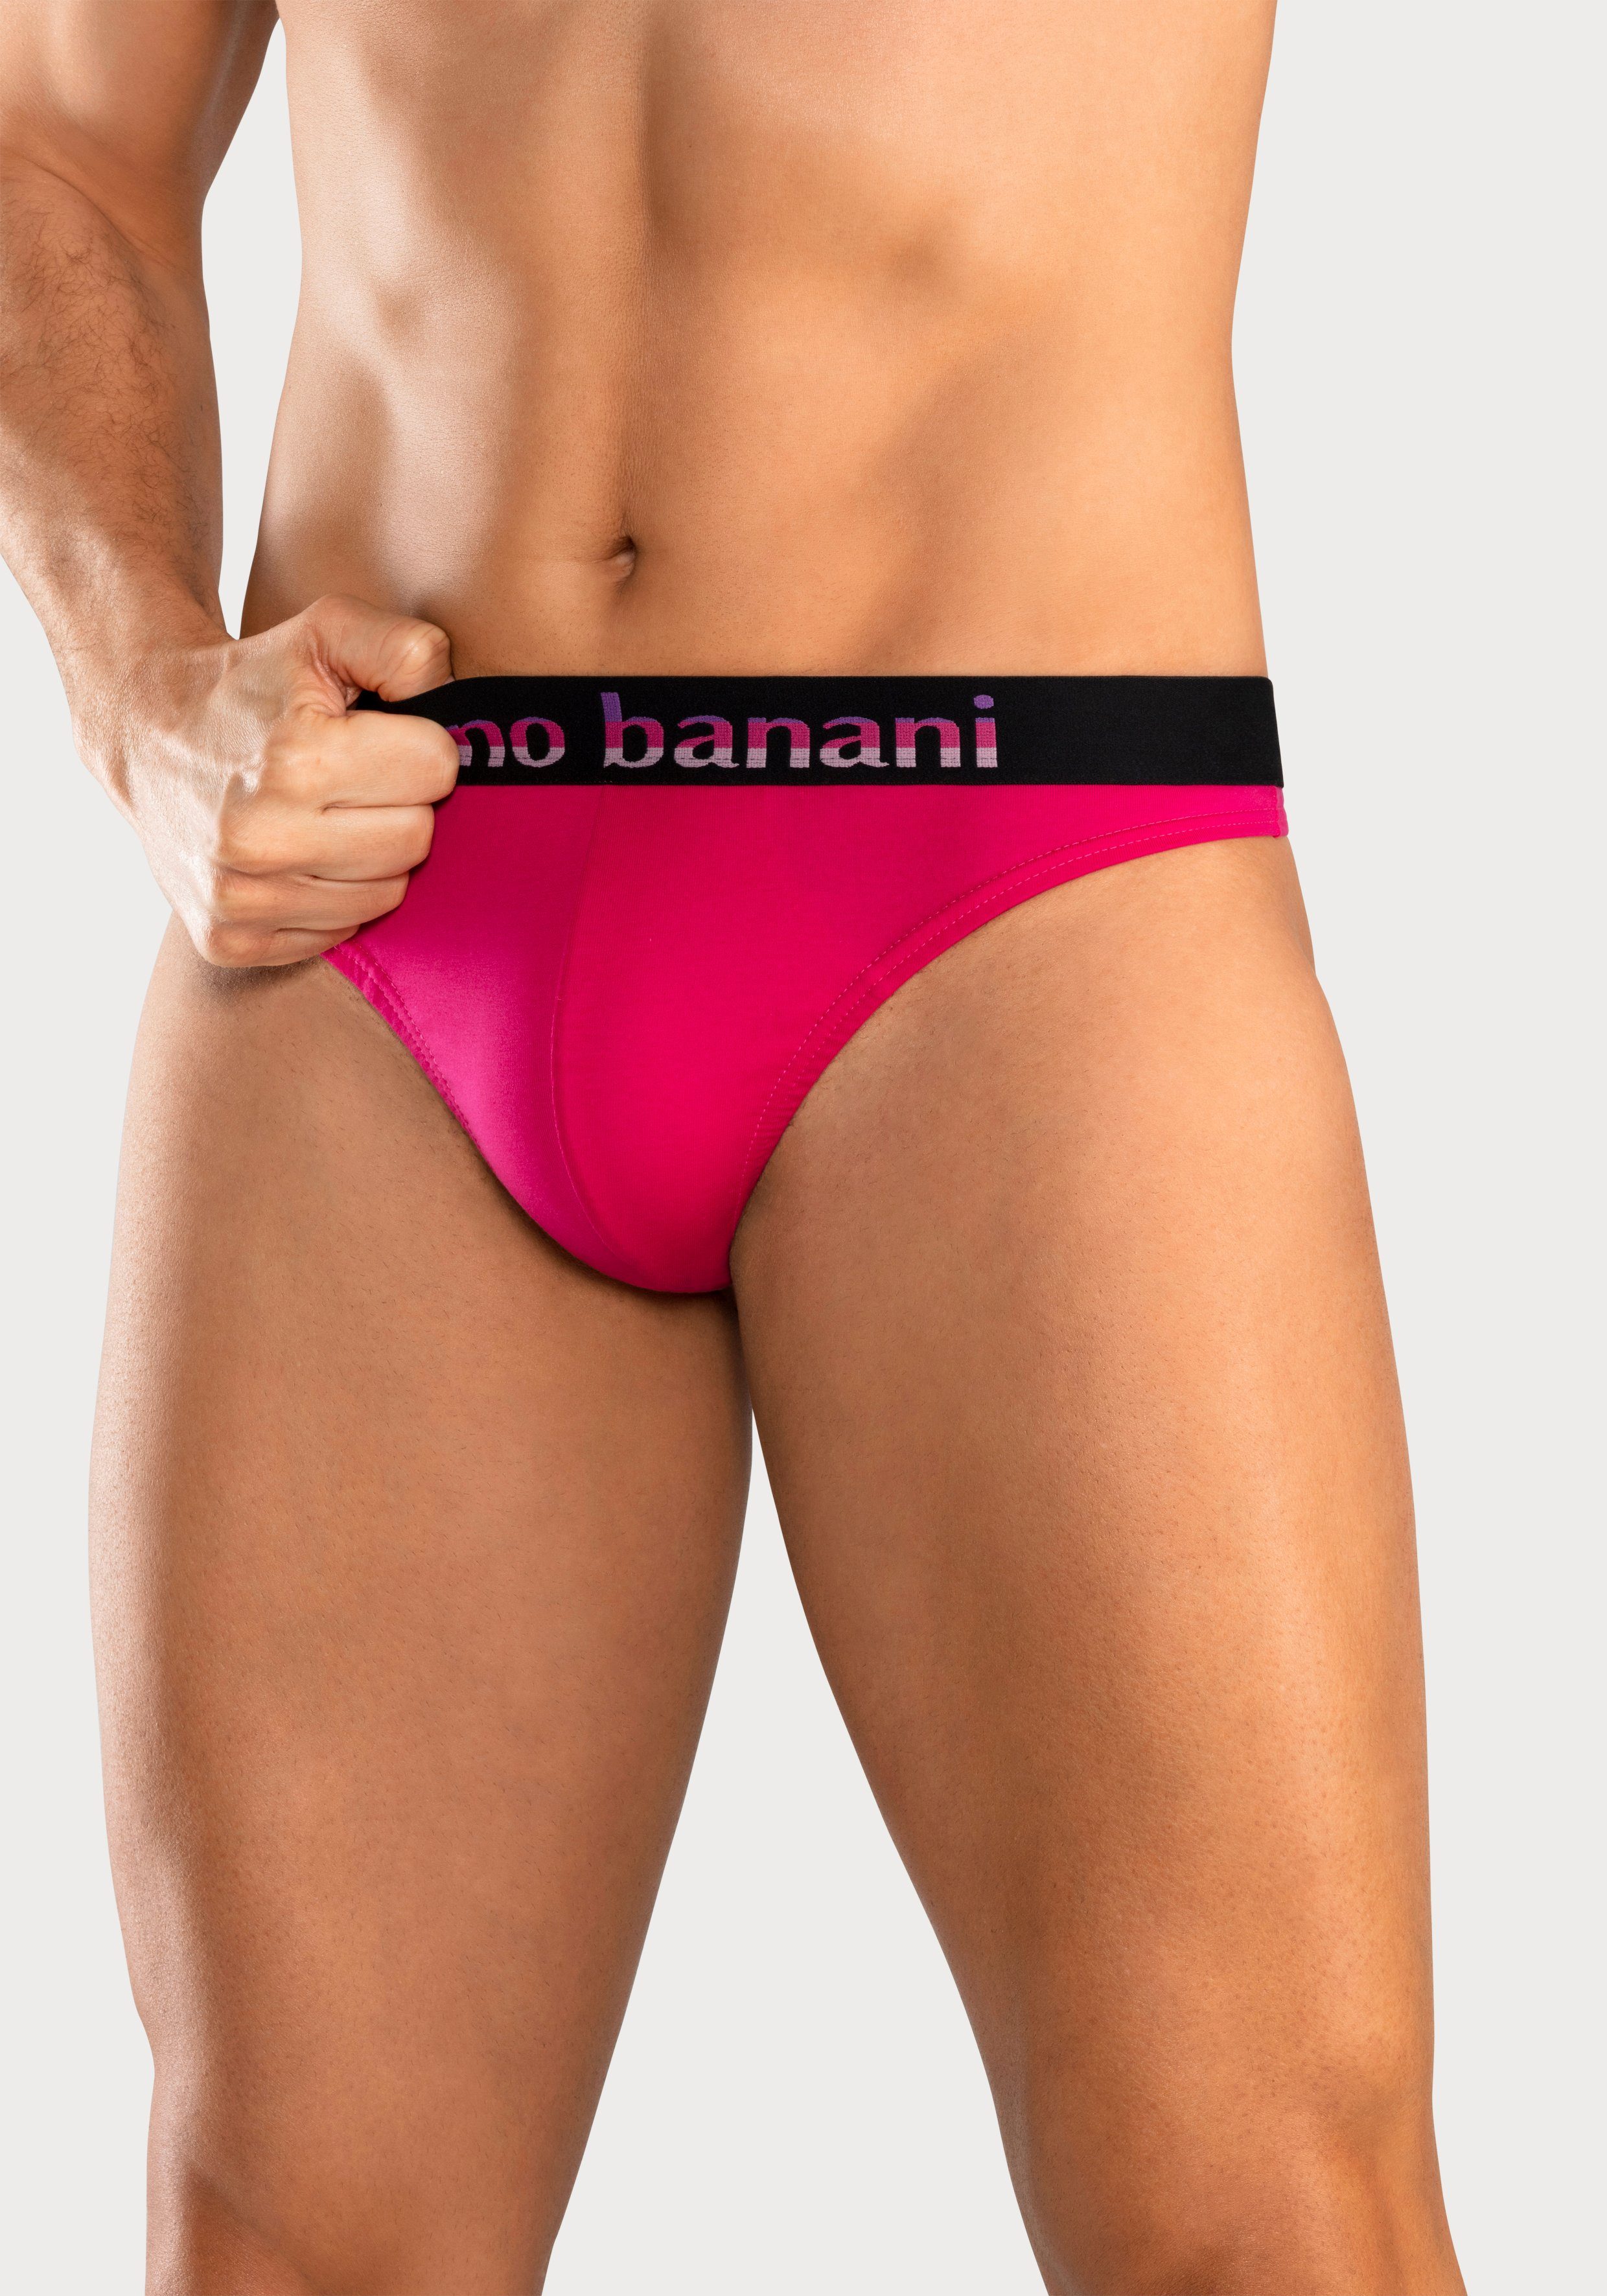 Bruno Banani String (Packung, 5-St) mint, Streifen schwarz Logo gelb, Webbund pink, mit blau